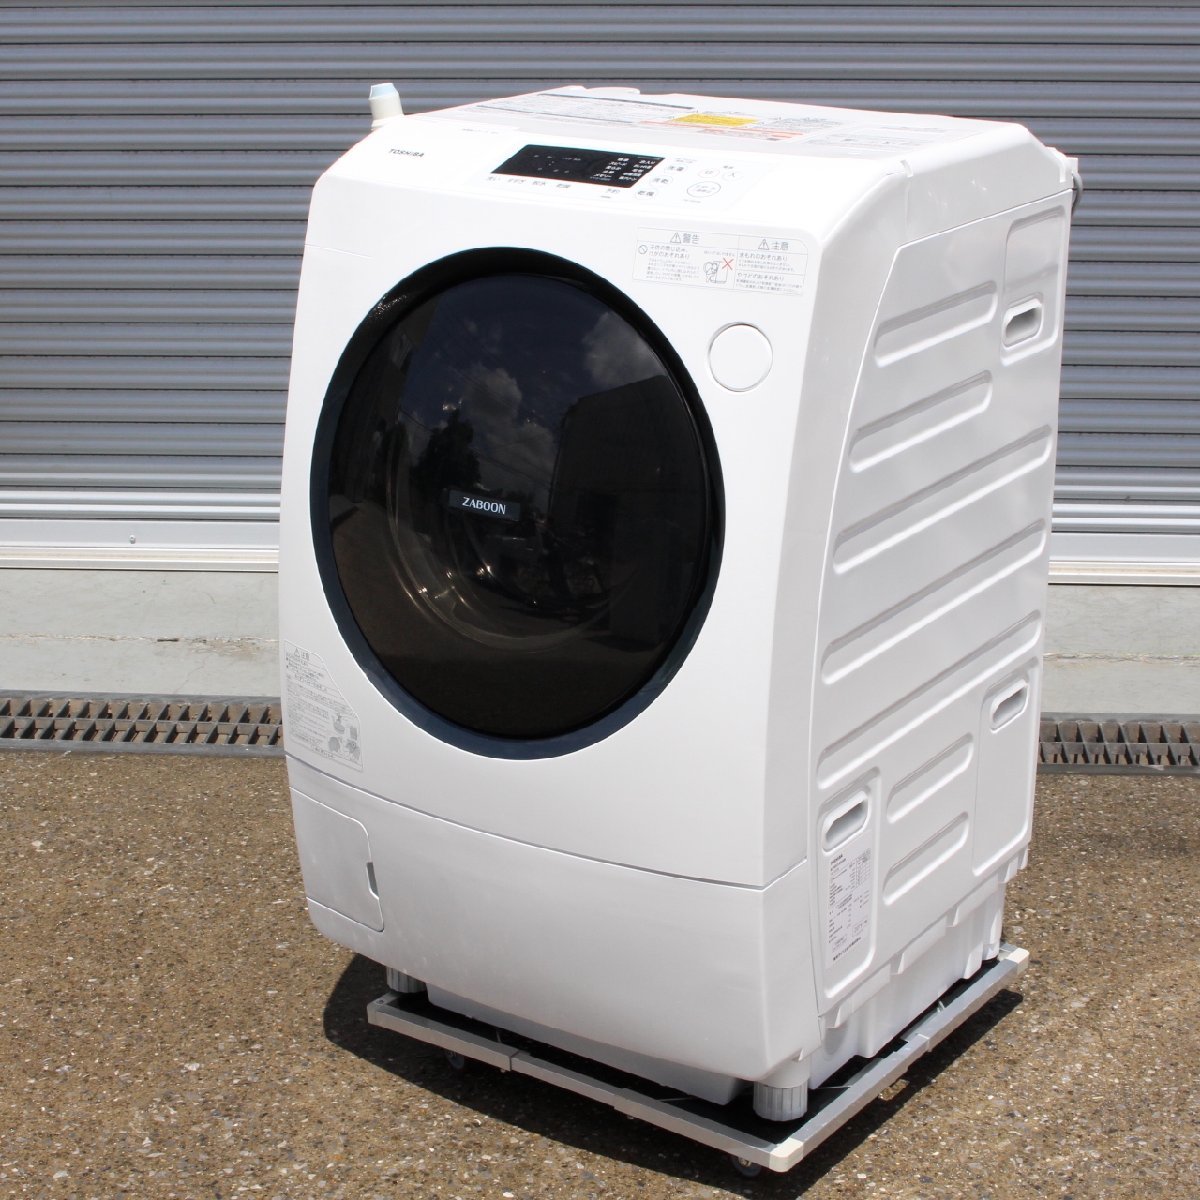 川崎市幸区にて 東芝 ドラム式洗濯機 TW-95G8L 2019年製 を出張買取させて頂きました。